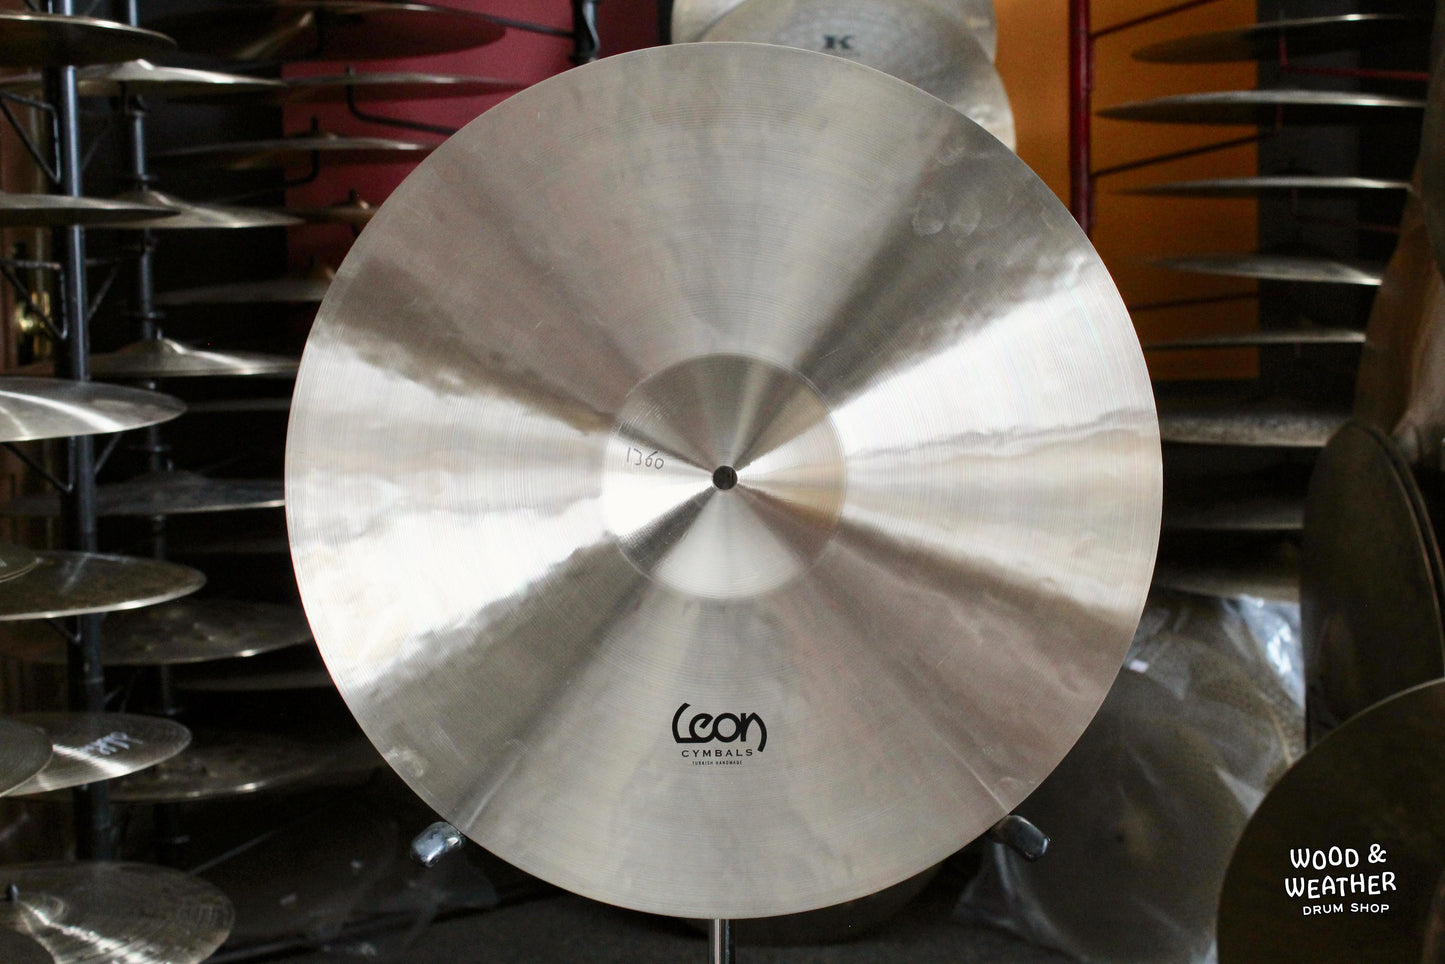 Leon Cymbals 18" Classic Crash Cymbal 1360g